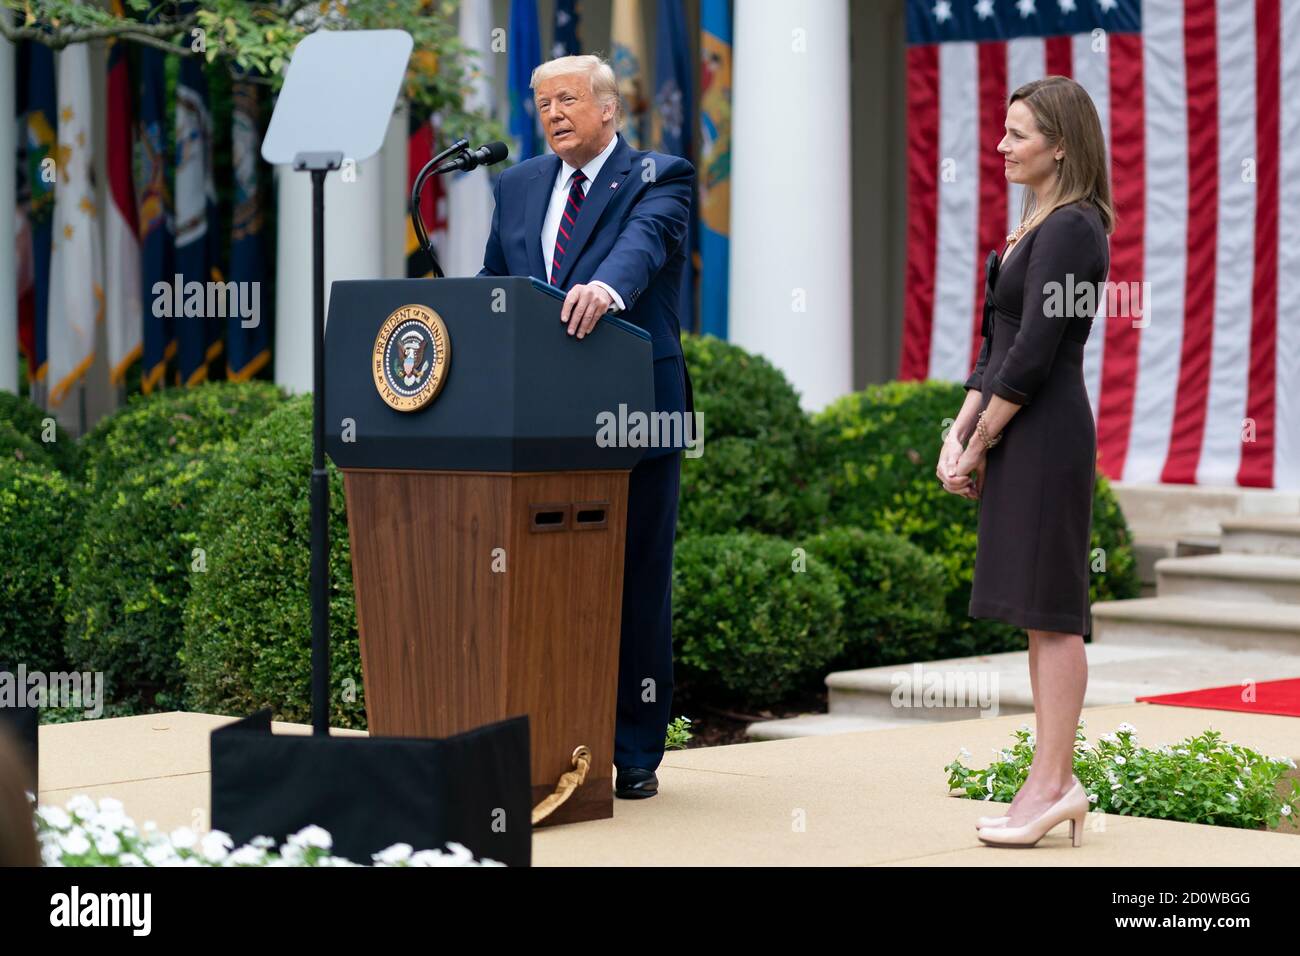 Le président Donald J. Trump annonce la nomination du juge Amy Coney Barrett au poste de juge associé de la Cour suprême des États-Unis le samedi 26 septembre 2020, dans le jardin des roses de la Maison Blanche. (ÉTATS-UNIS) Banque D'Images